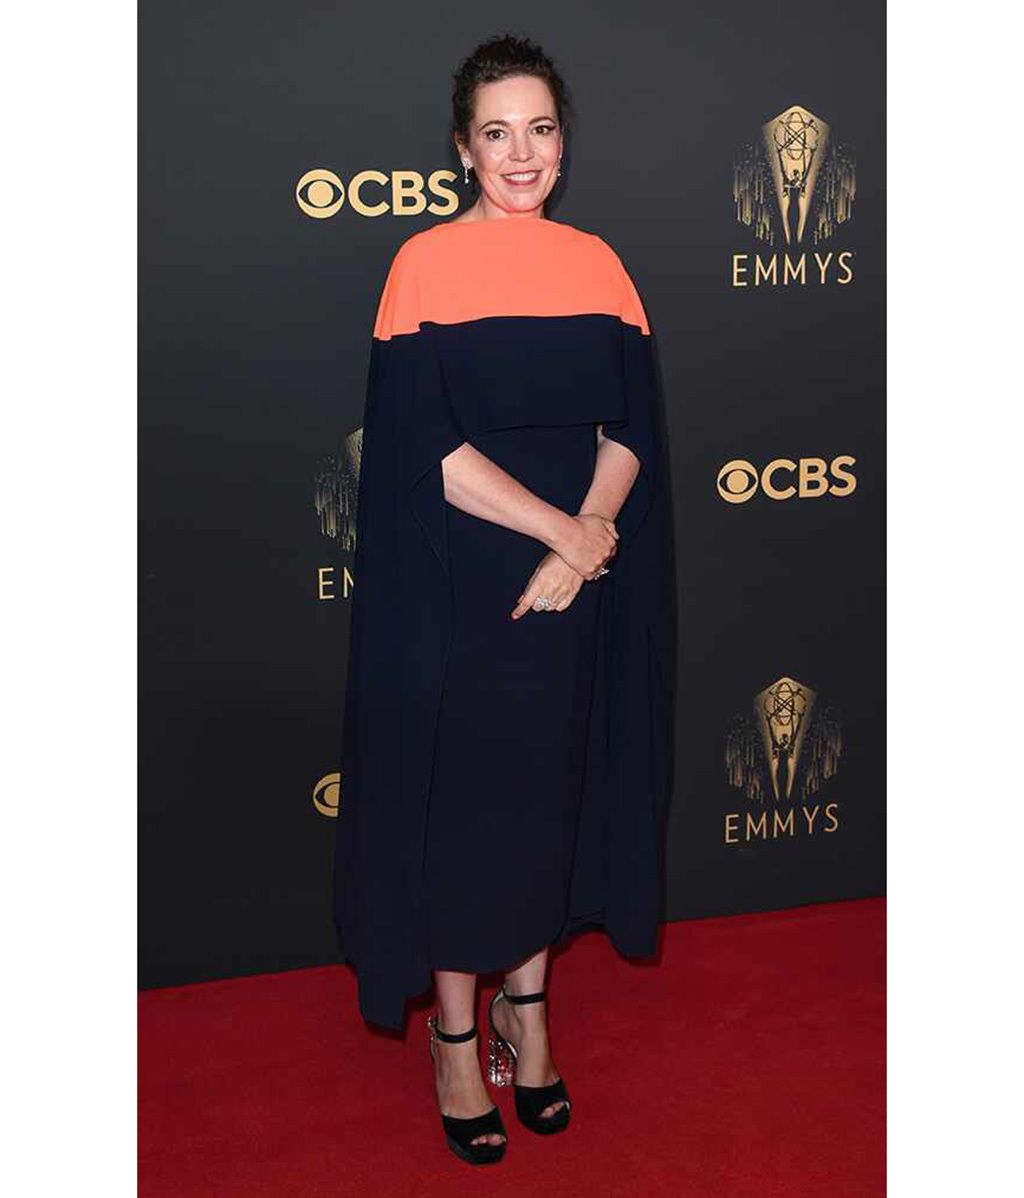 La alfombra roja de los premios Emmy 2021, en fotos